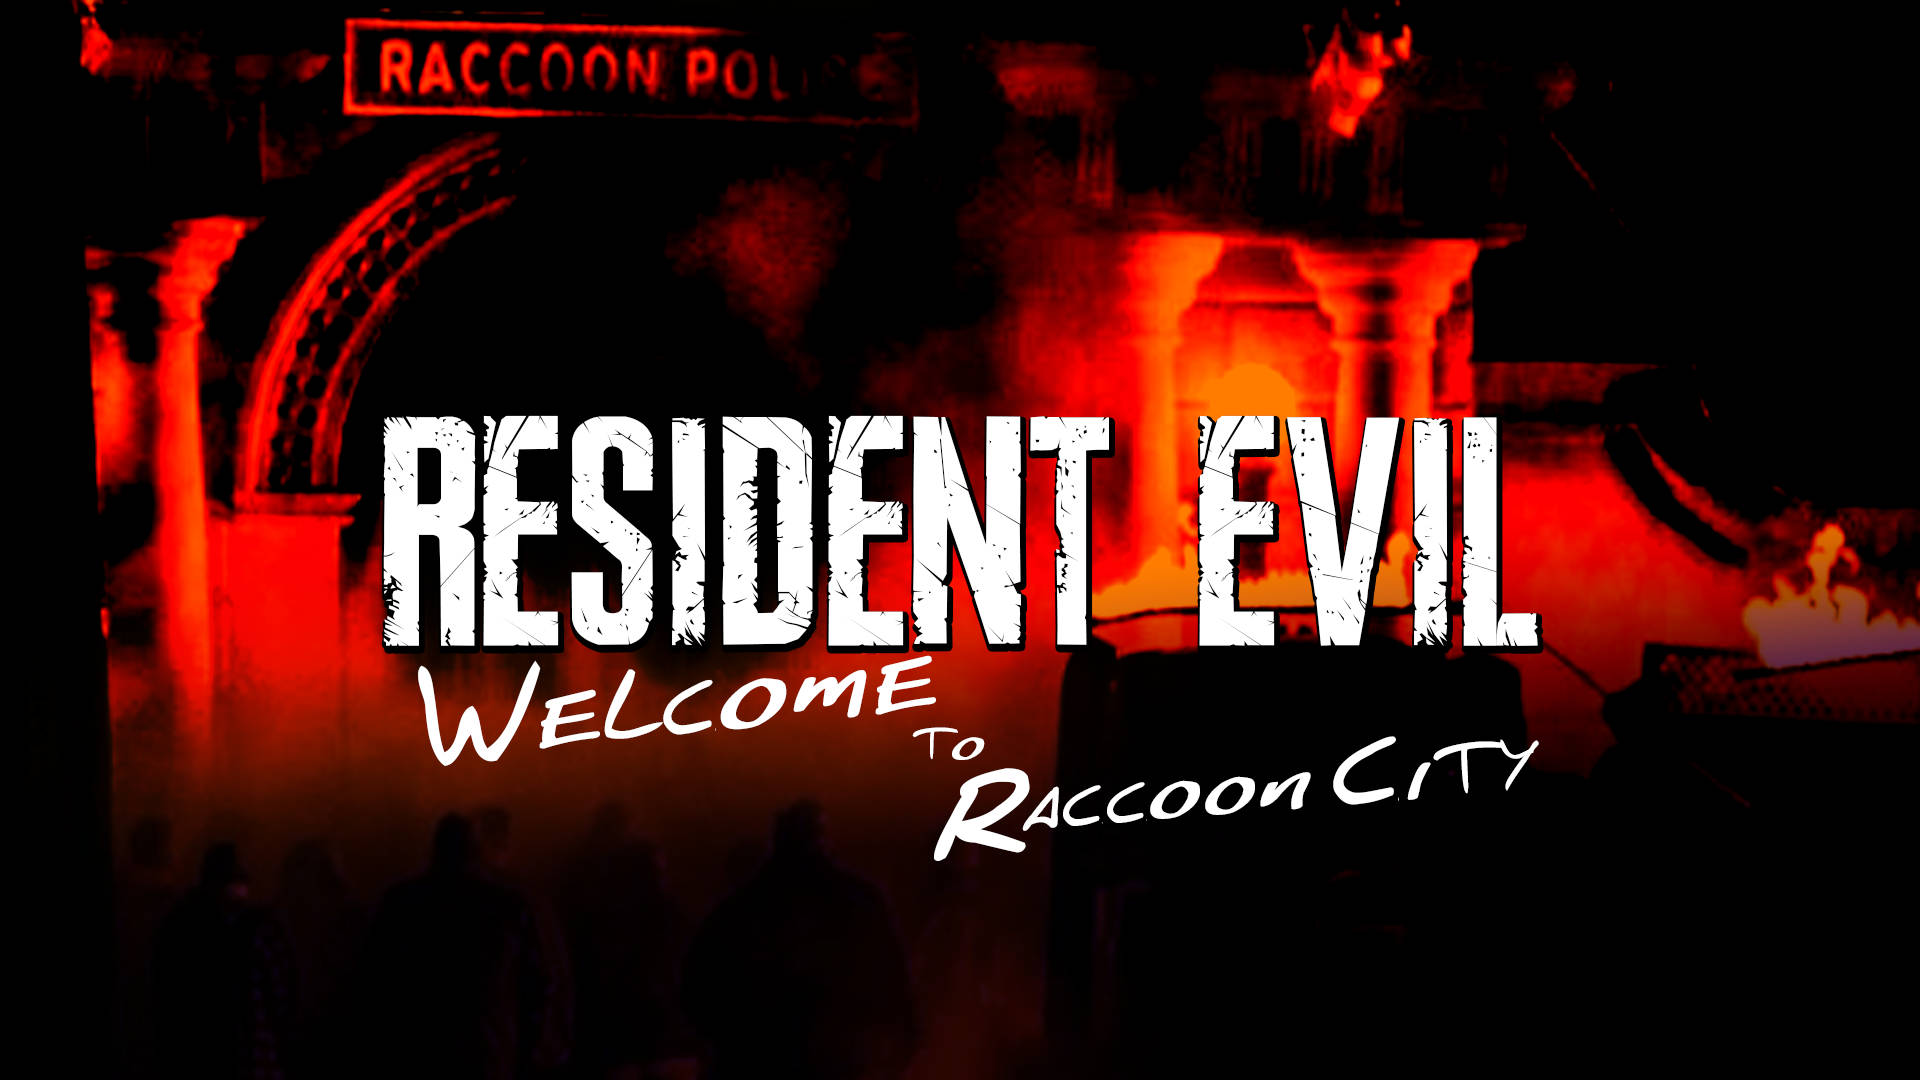 Residentevil Välkommen Till Raccoon City Monokrom Wallpaper